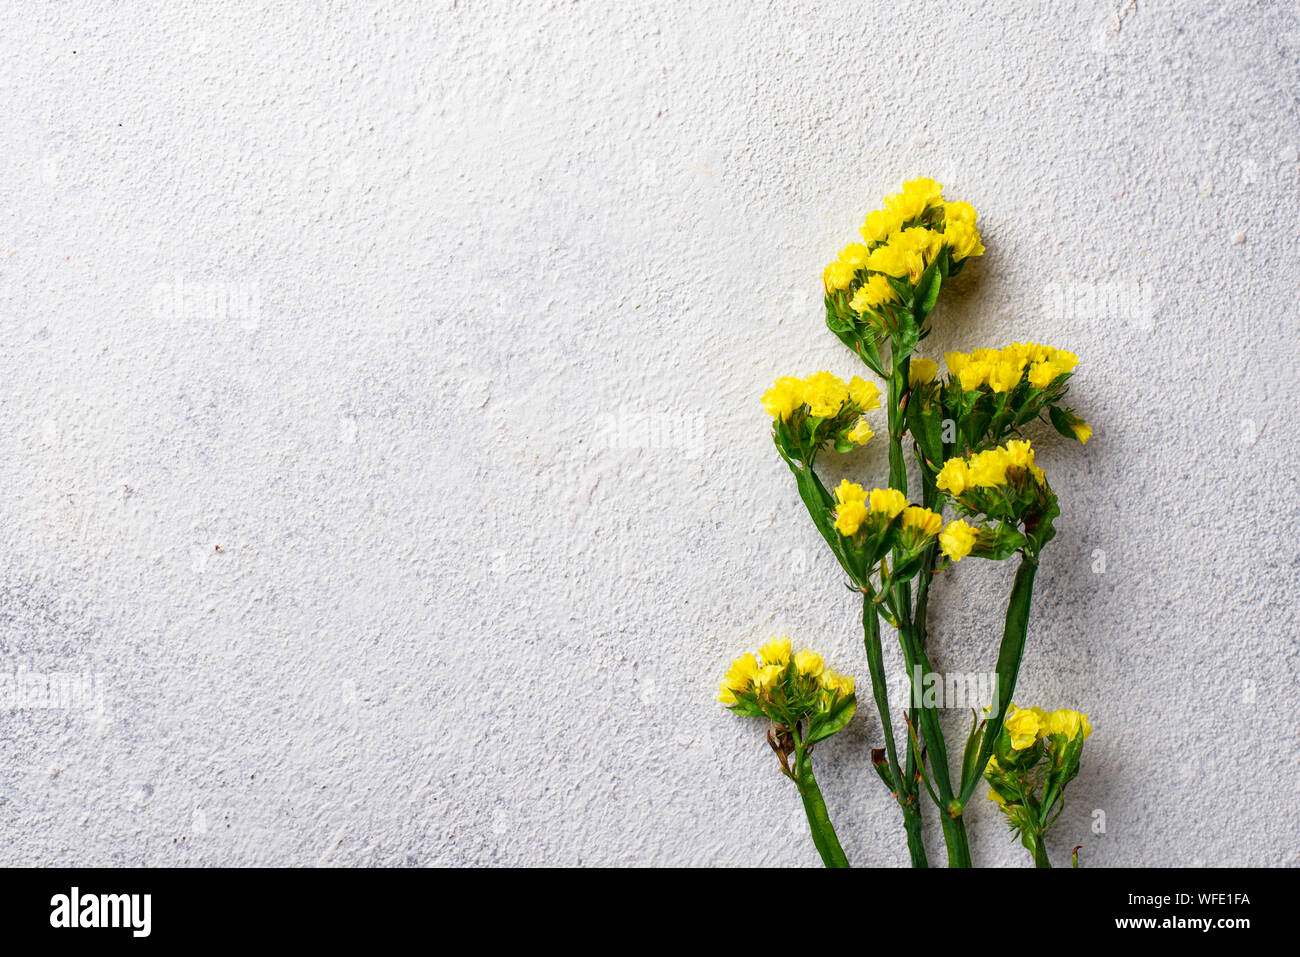 Yellow Limonium flower on white background Stock Photo